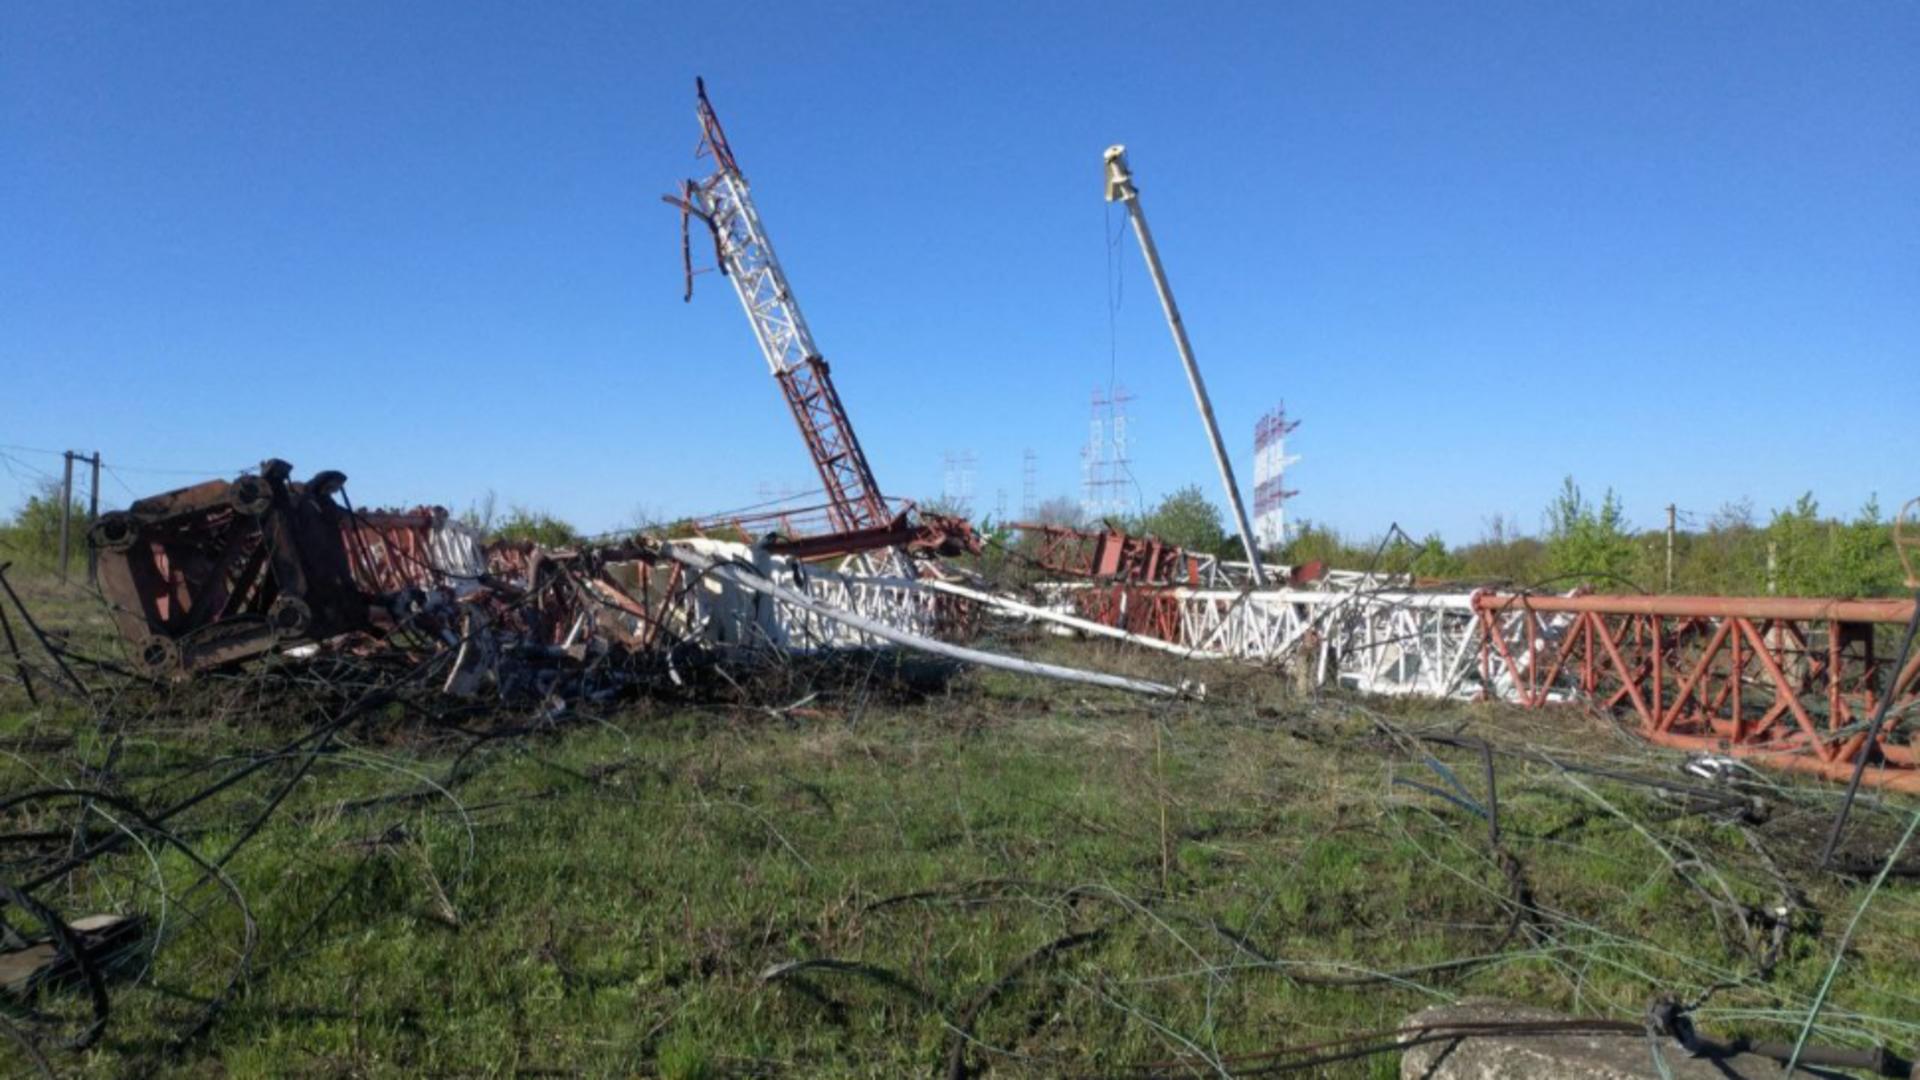 Antene radio rusești distruse în Transnistria. Foto/Profimedia